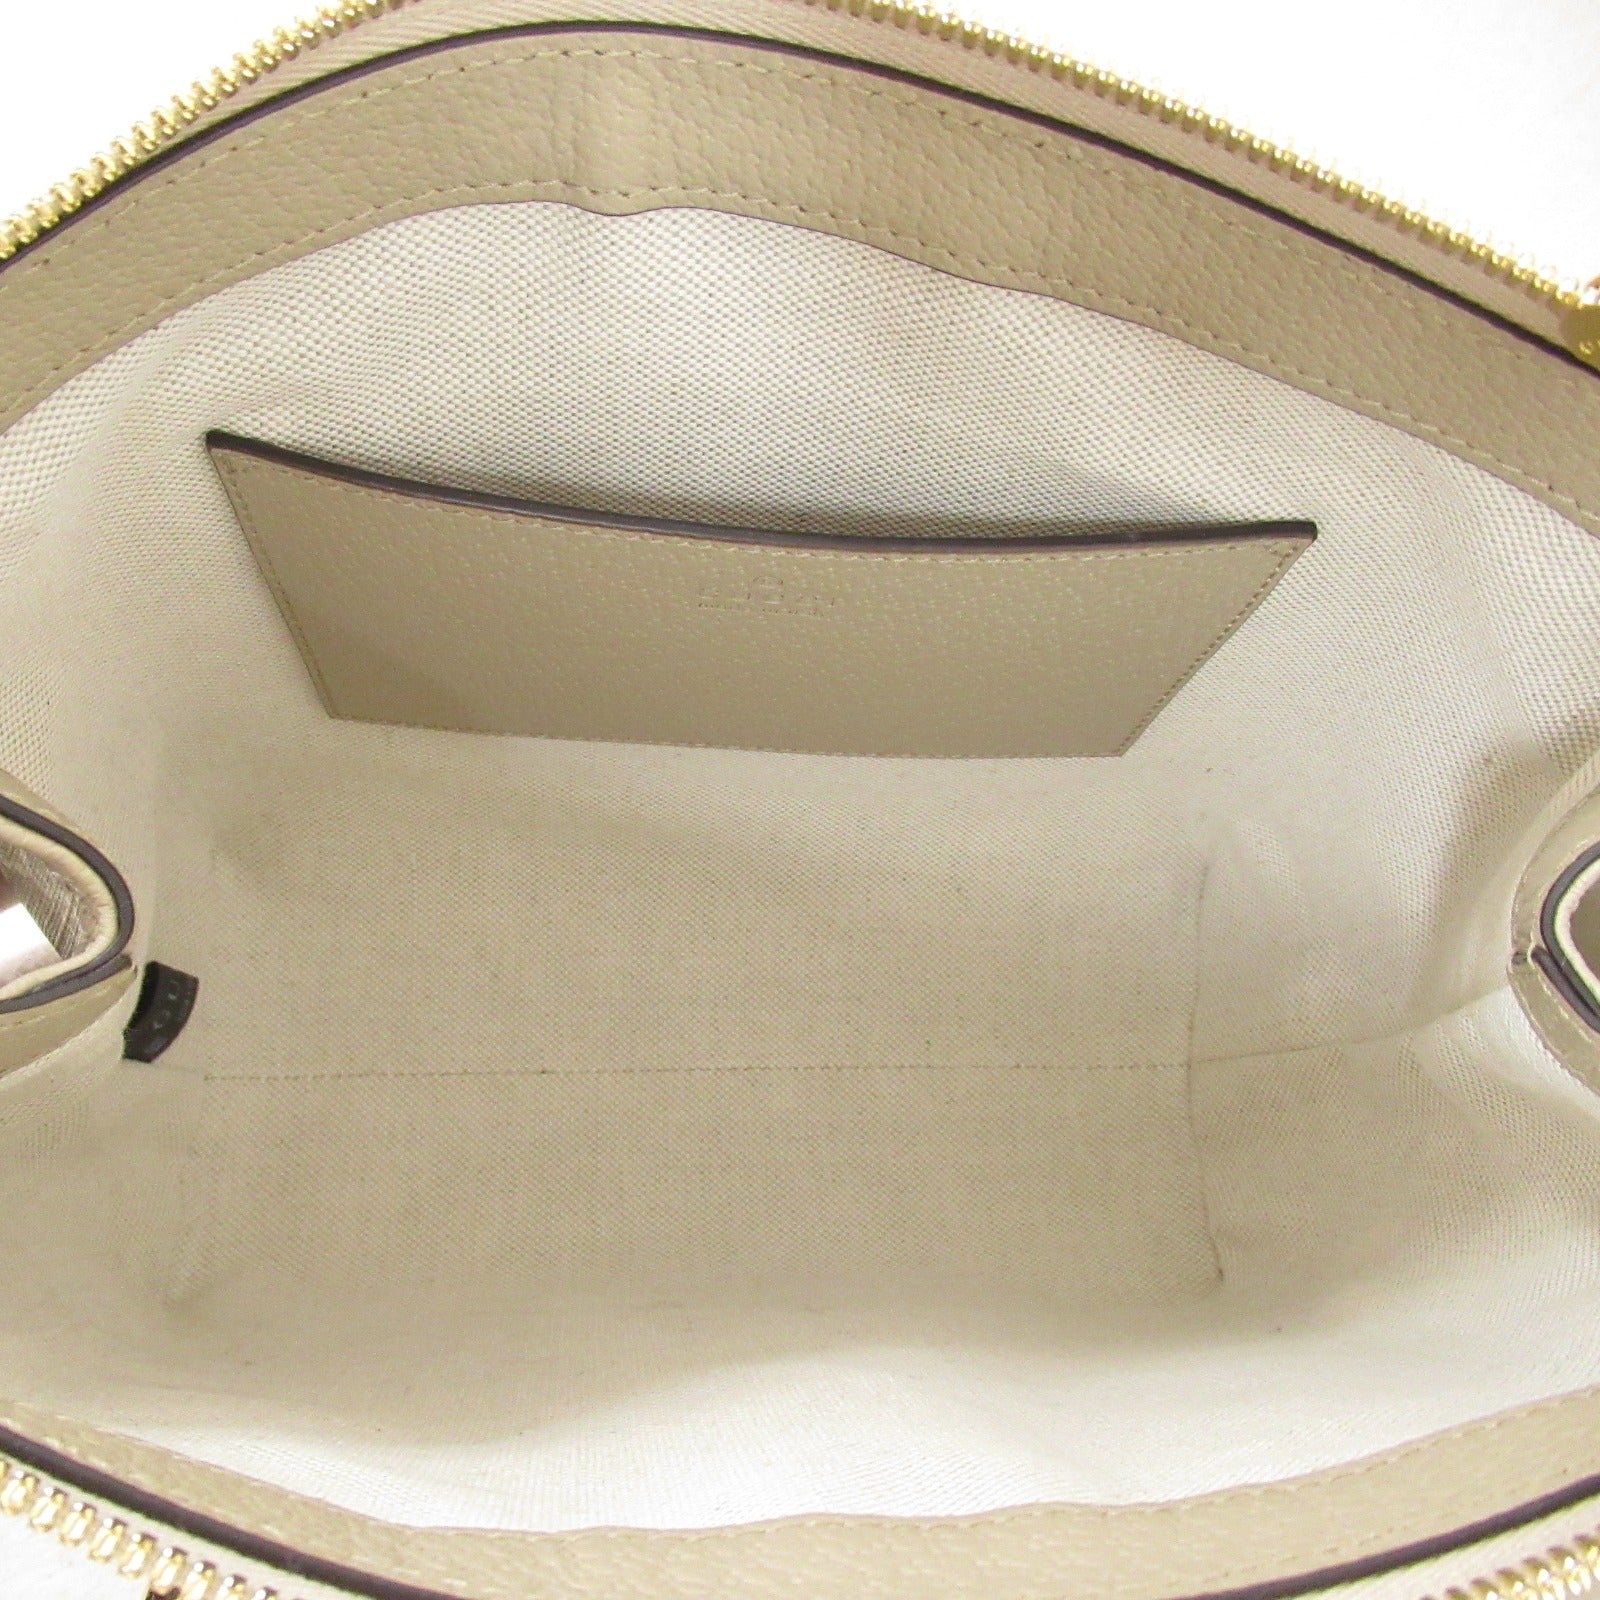 Gucci OPHIDIA Offroad 2w Shoulder Bag 2way Shoulder Bag PVC Coated Canvas Leather  Beige  547551